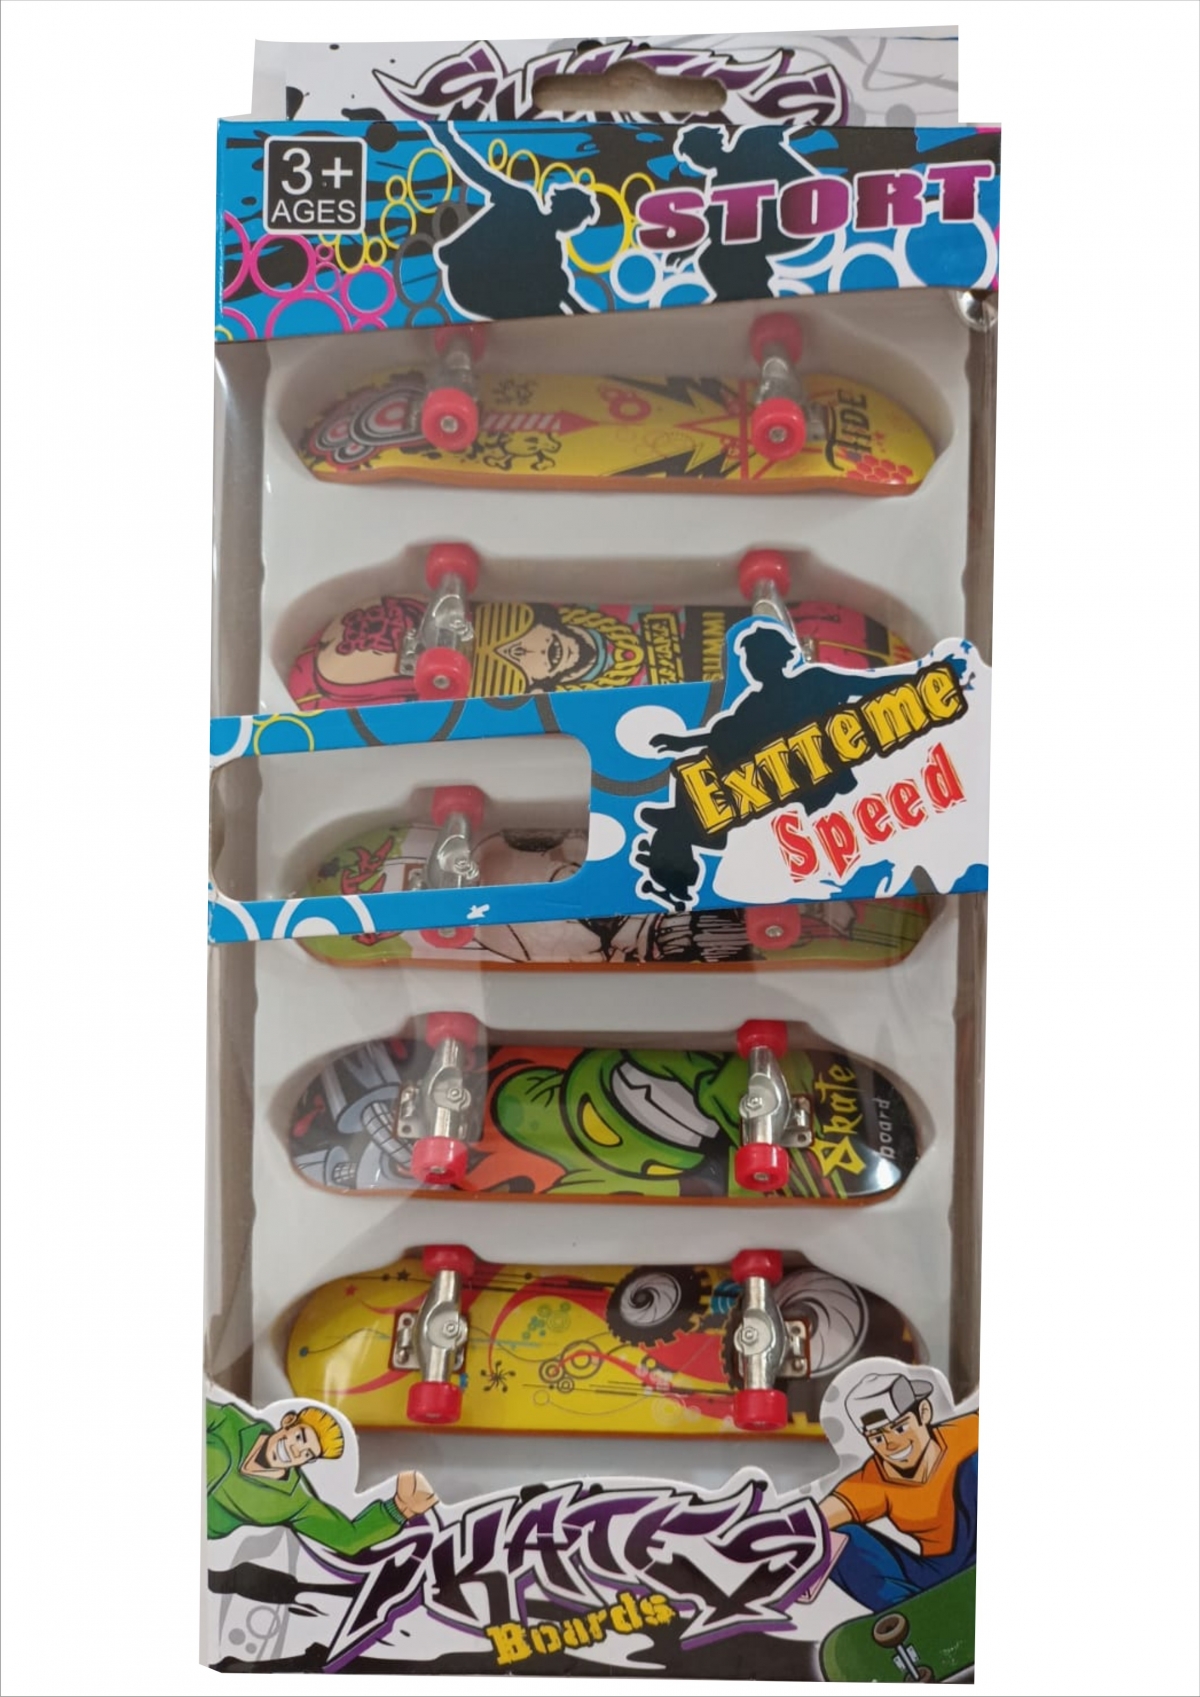 Kit 2 Skate De Dedo C/ Lixa Fingerboard Criança + Acessórios